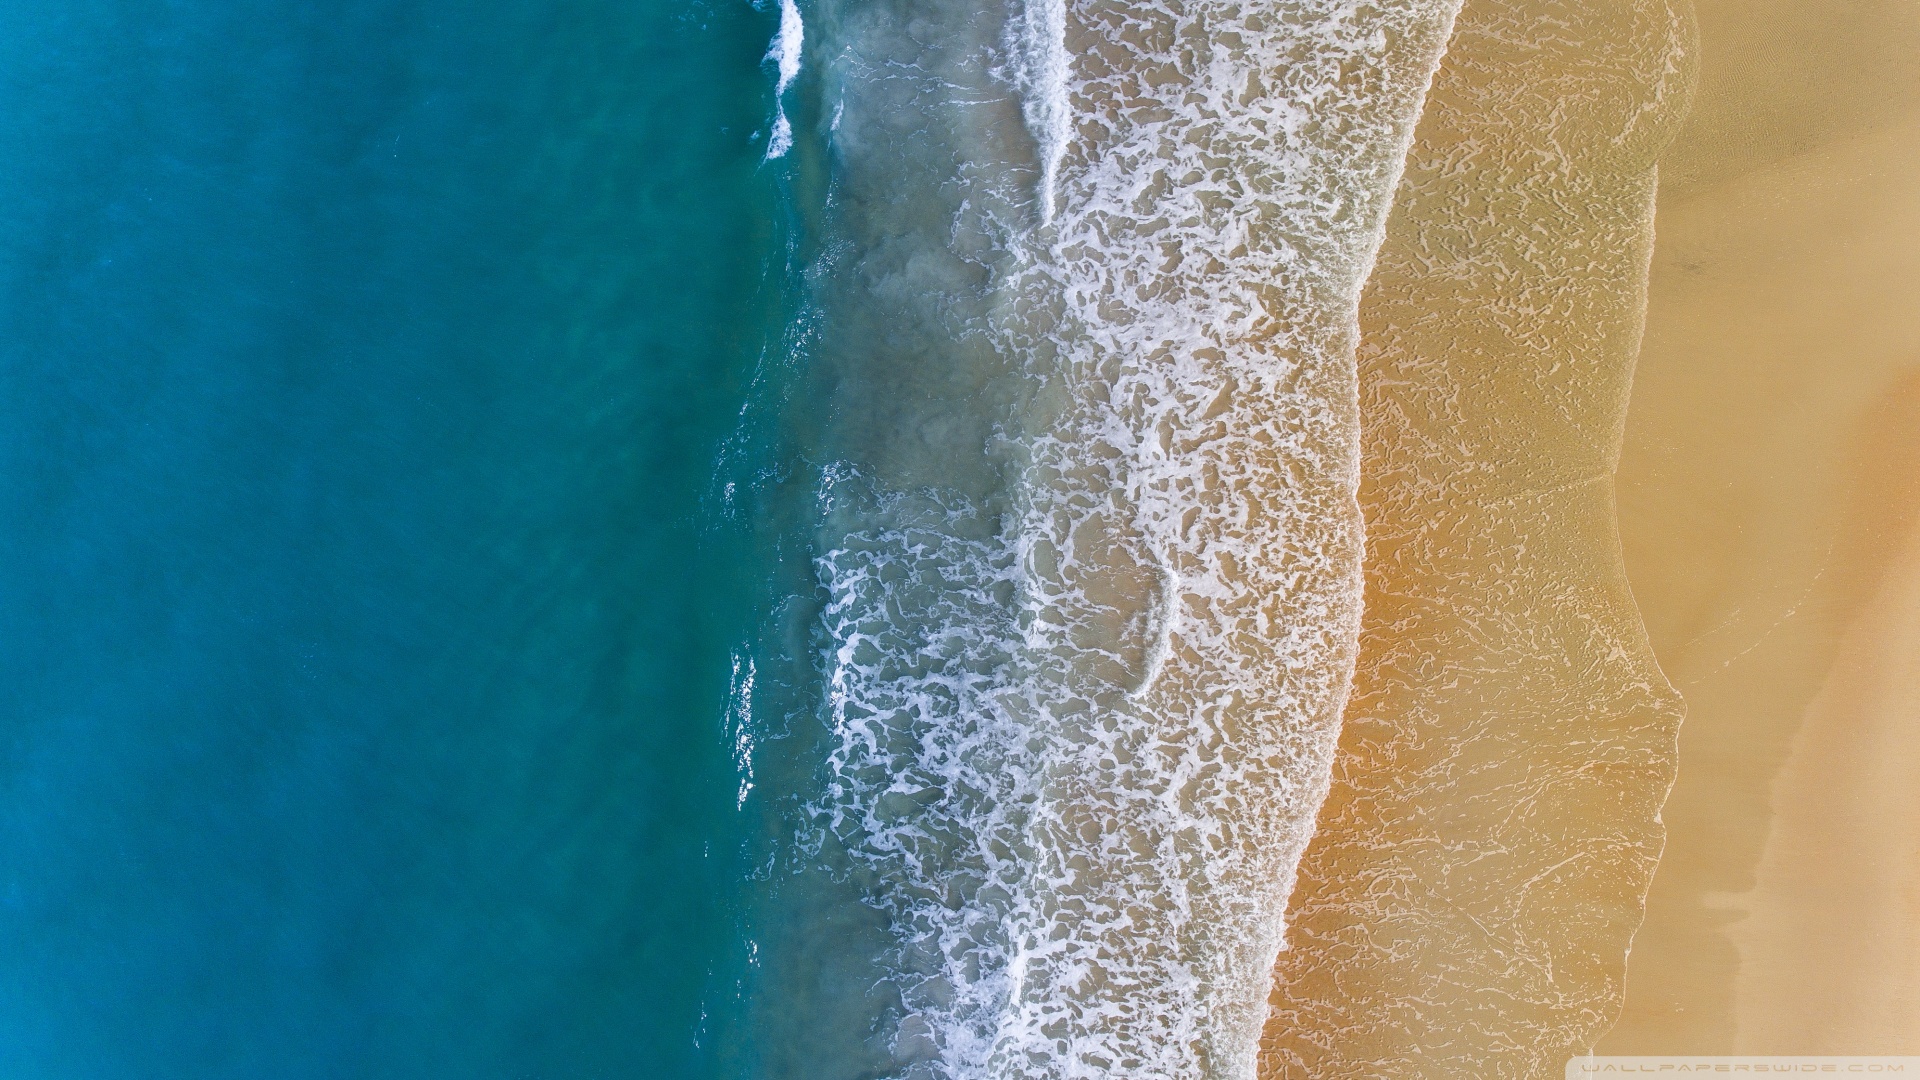 Beach Sand Aerial View   1920x1080 Wallpaper   teahubio 1920x1080